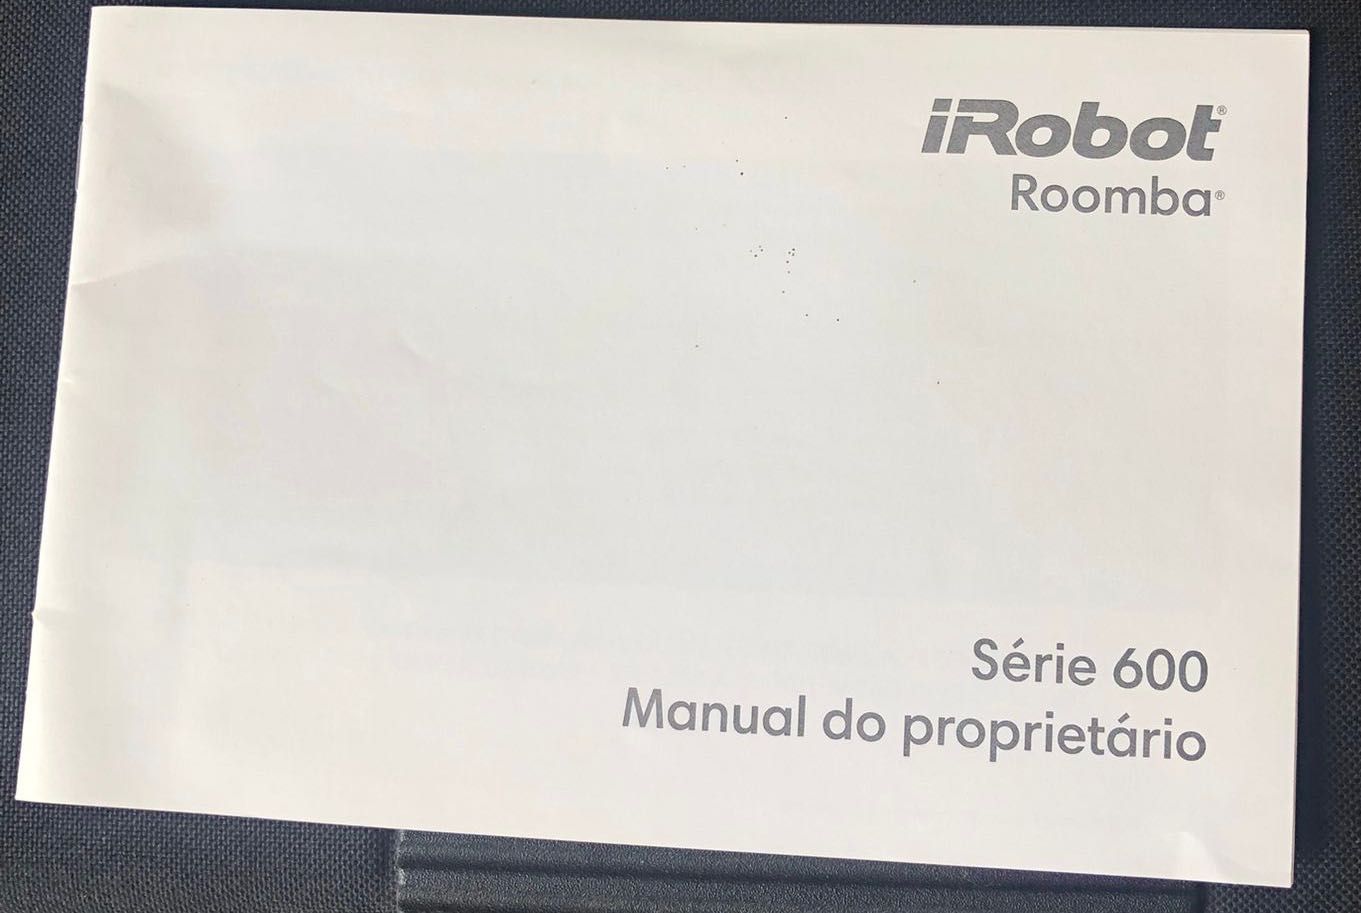 Vendo aspirador iRobot Roomba 676